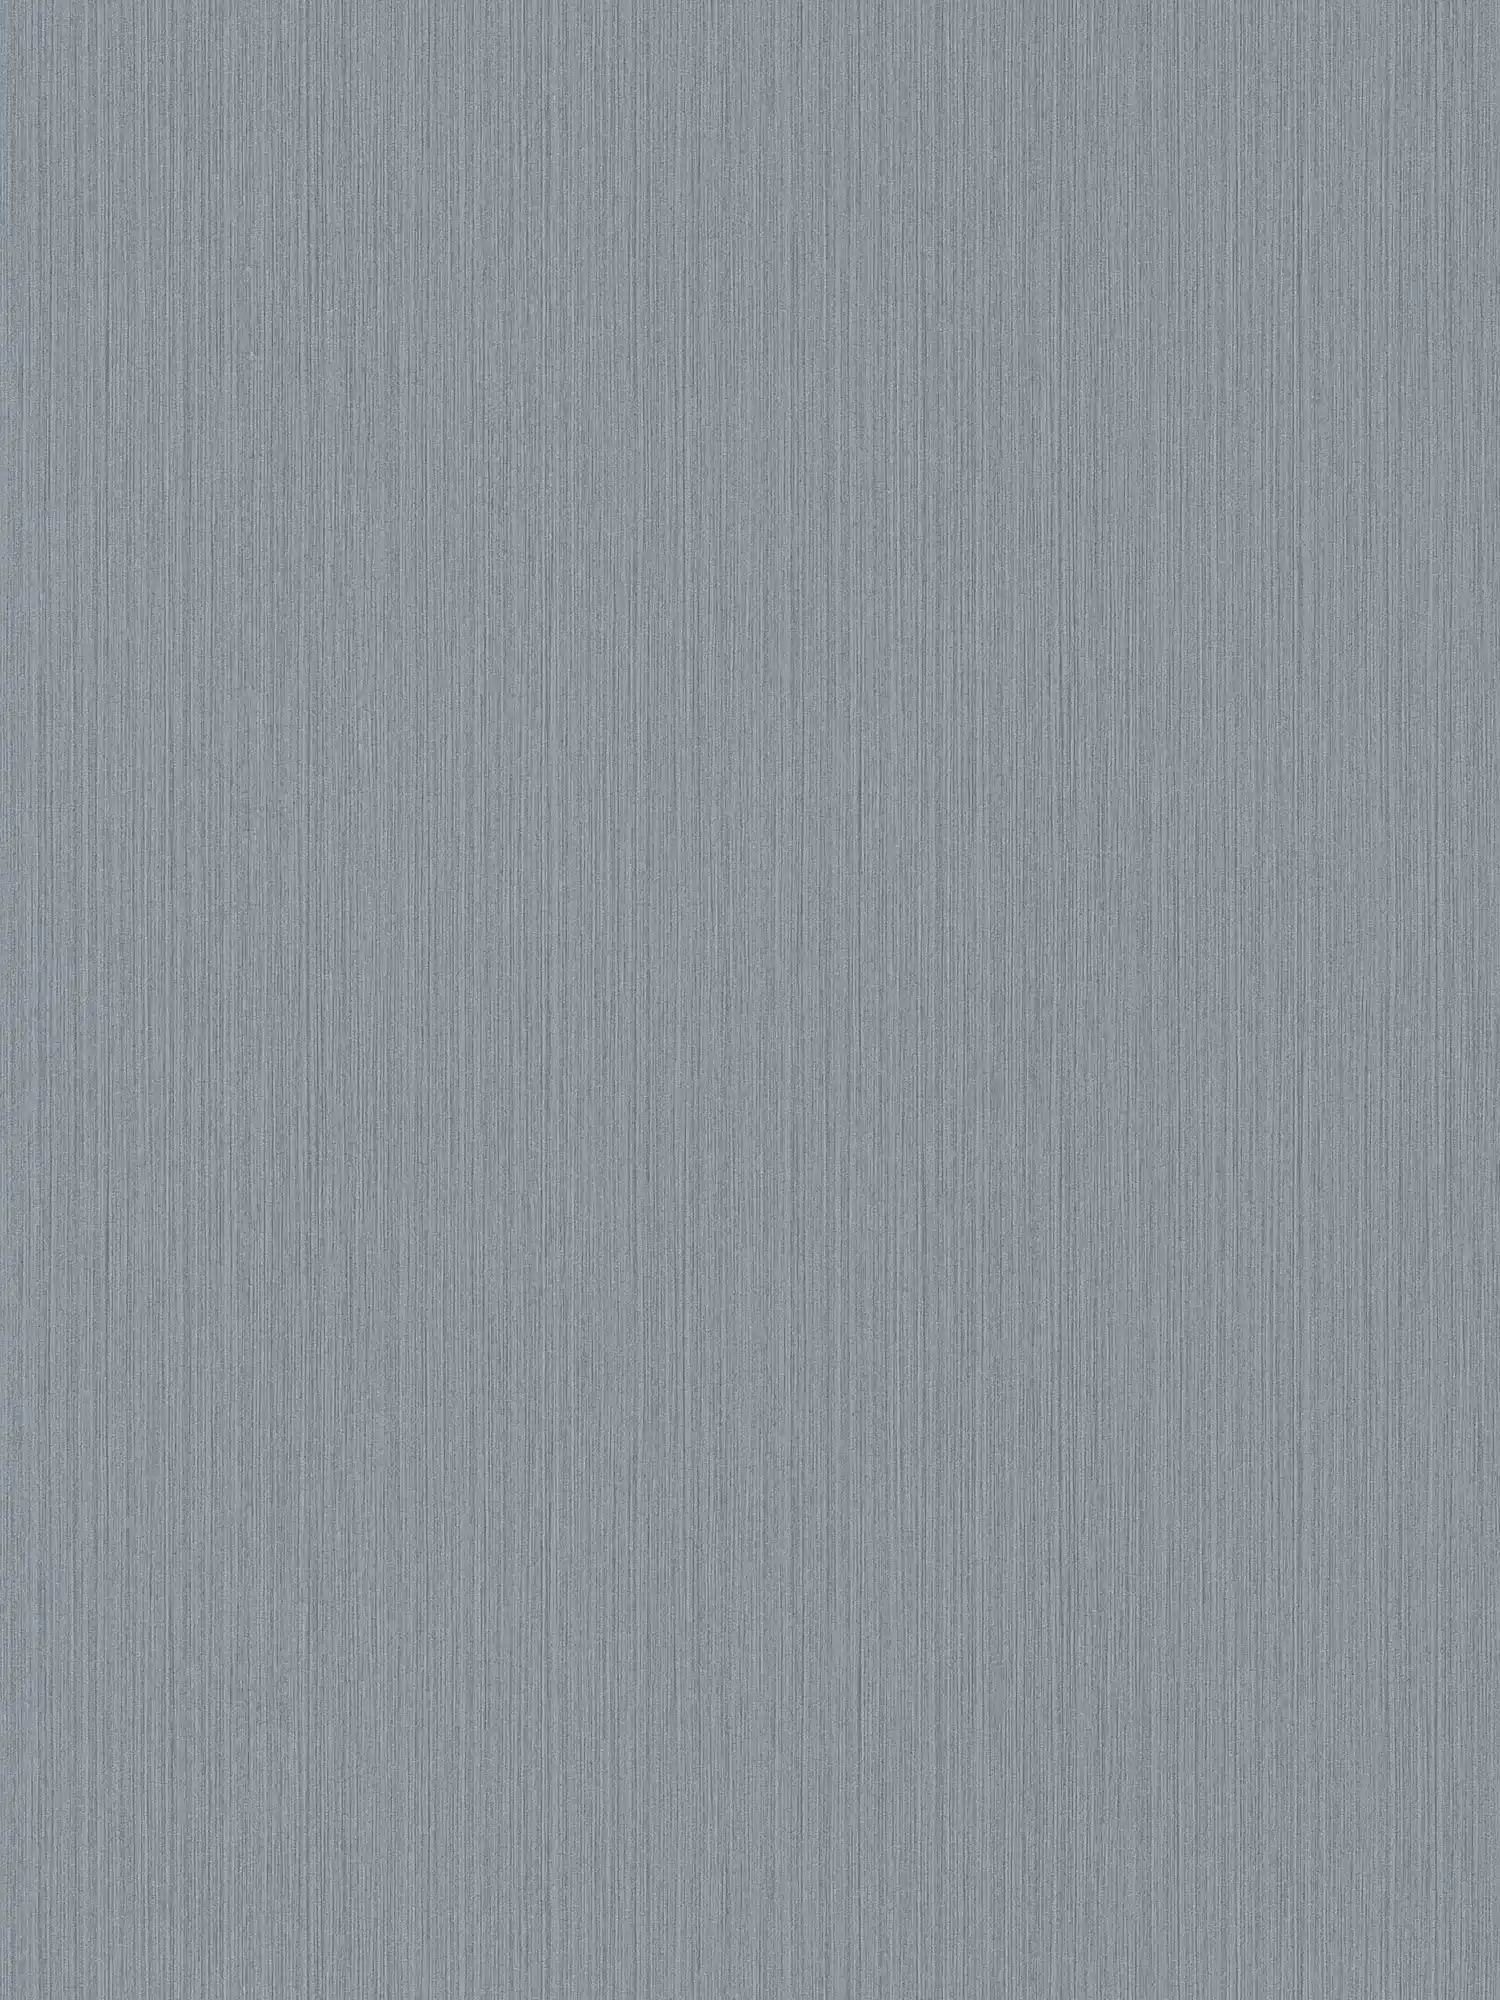 Einfarbige Tapete Grau mit meliertem Textileffekt von MICHALSKY
